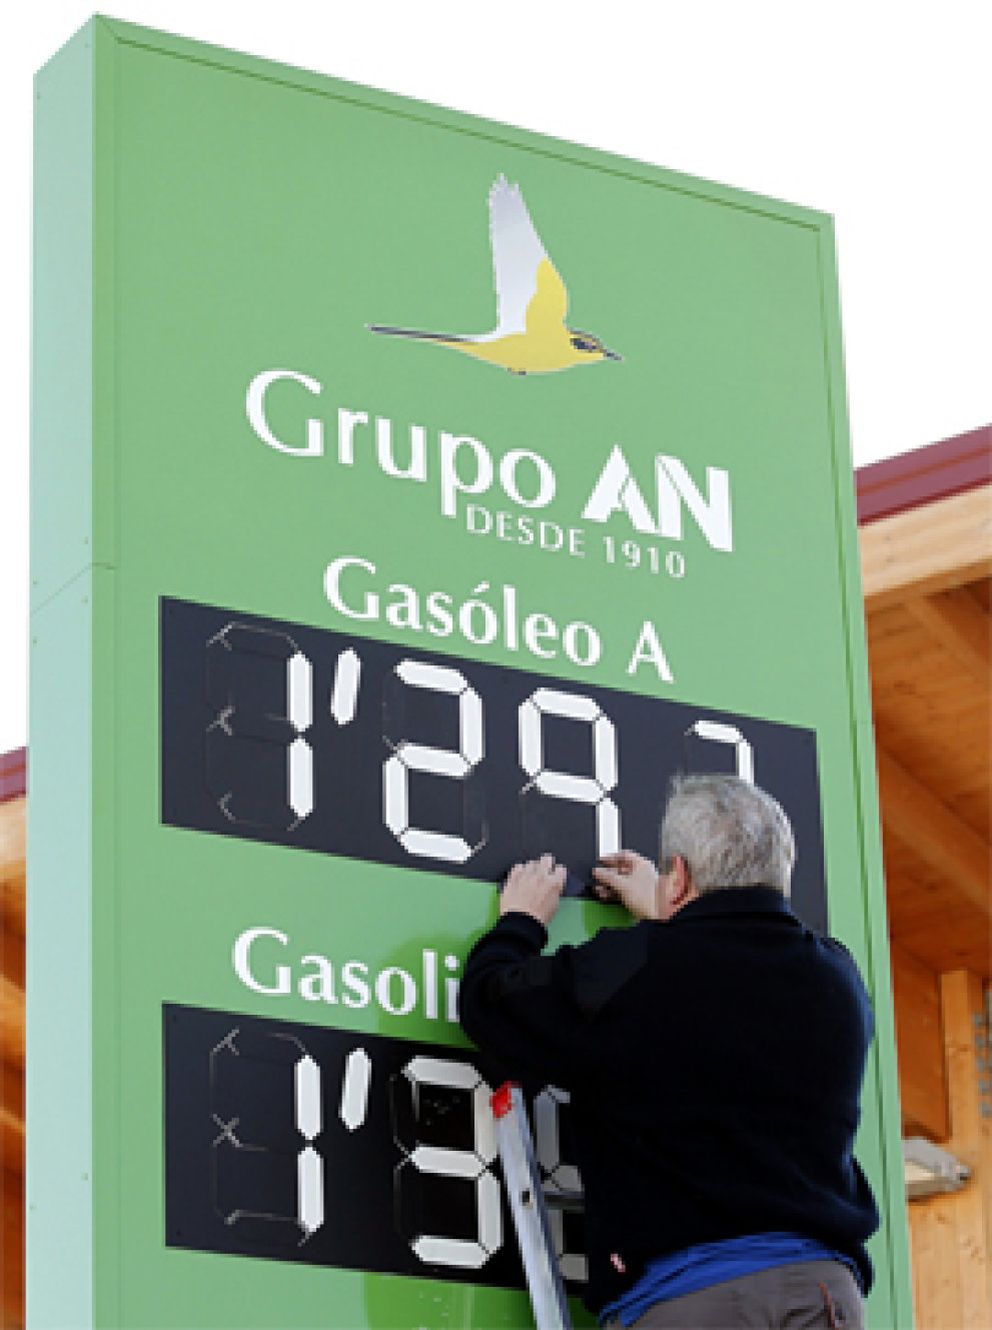 Foto: El gasóleo se abarata un 0,3% y marca el precio más bajo desde mediados del año pasado